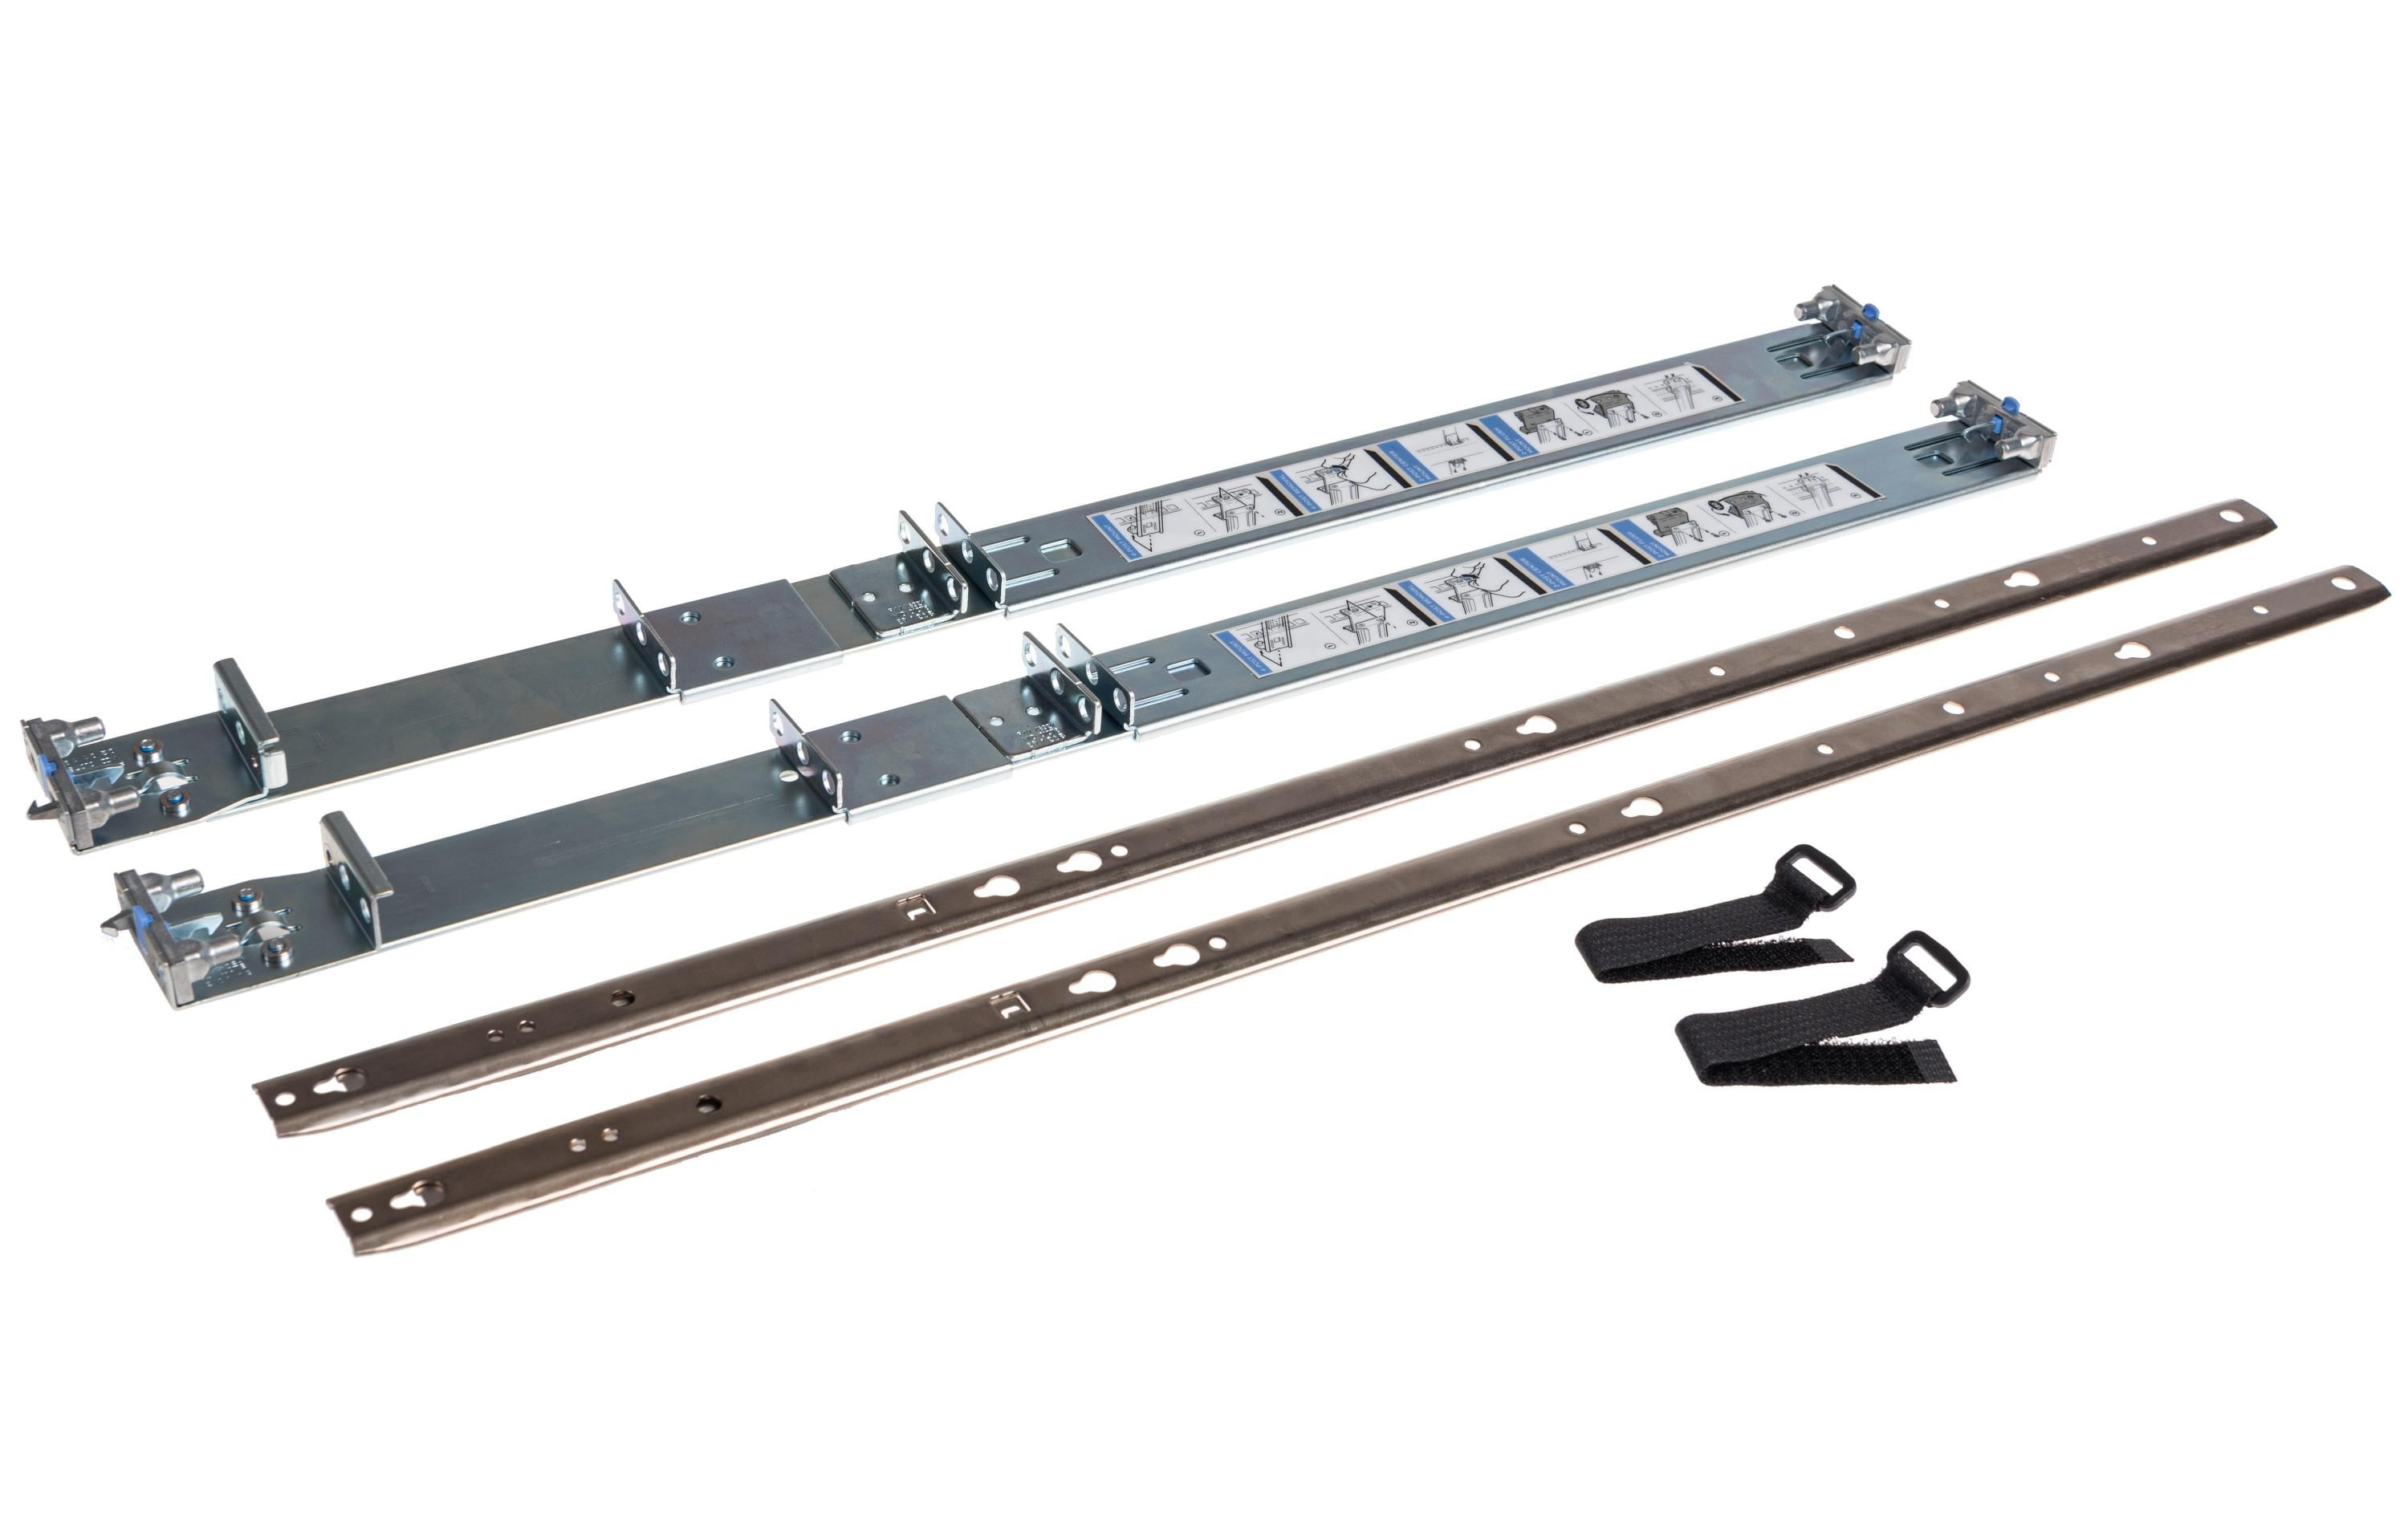 DELL Rackmount Kit Ready Rails 1U Static Rails 770-BBIC